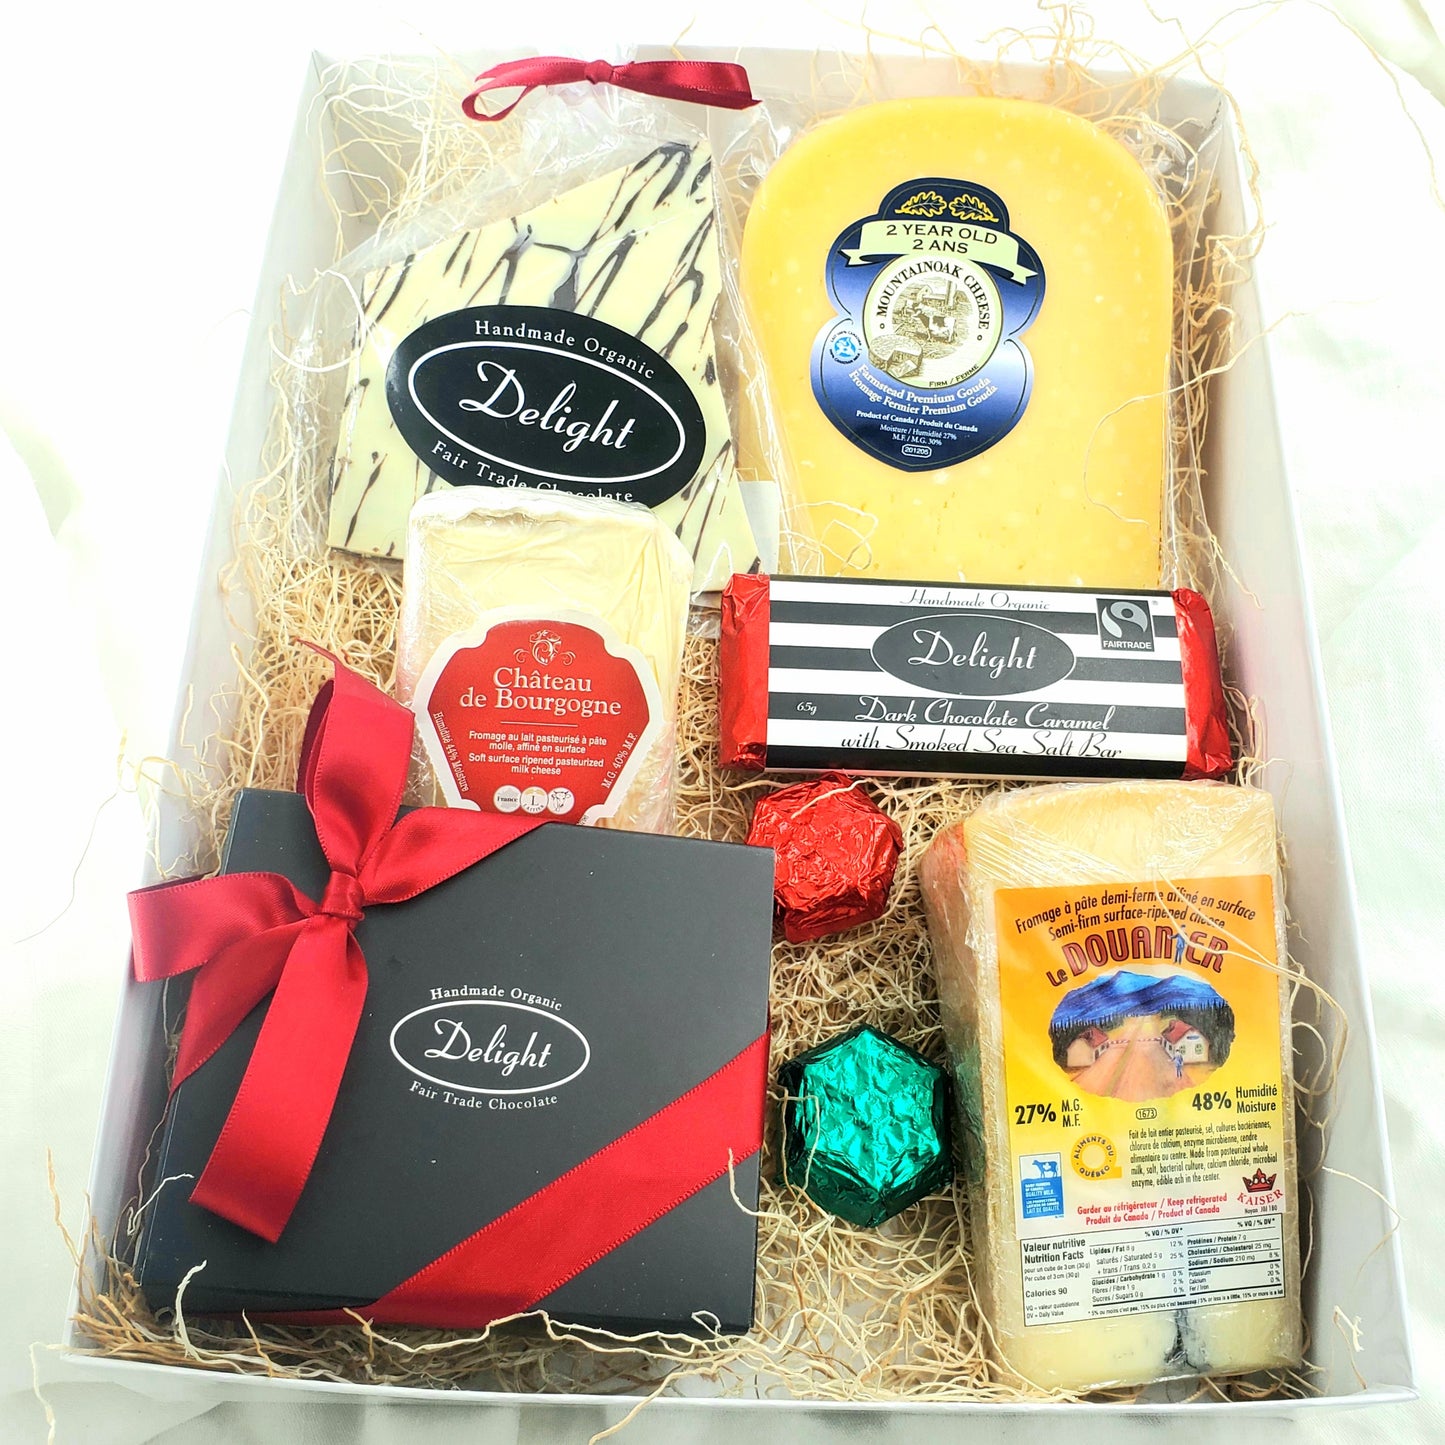 The Chocolate & Cheese Gift Box